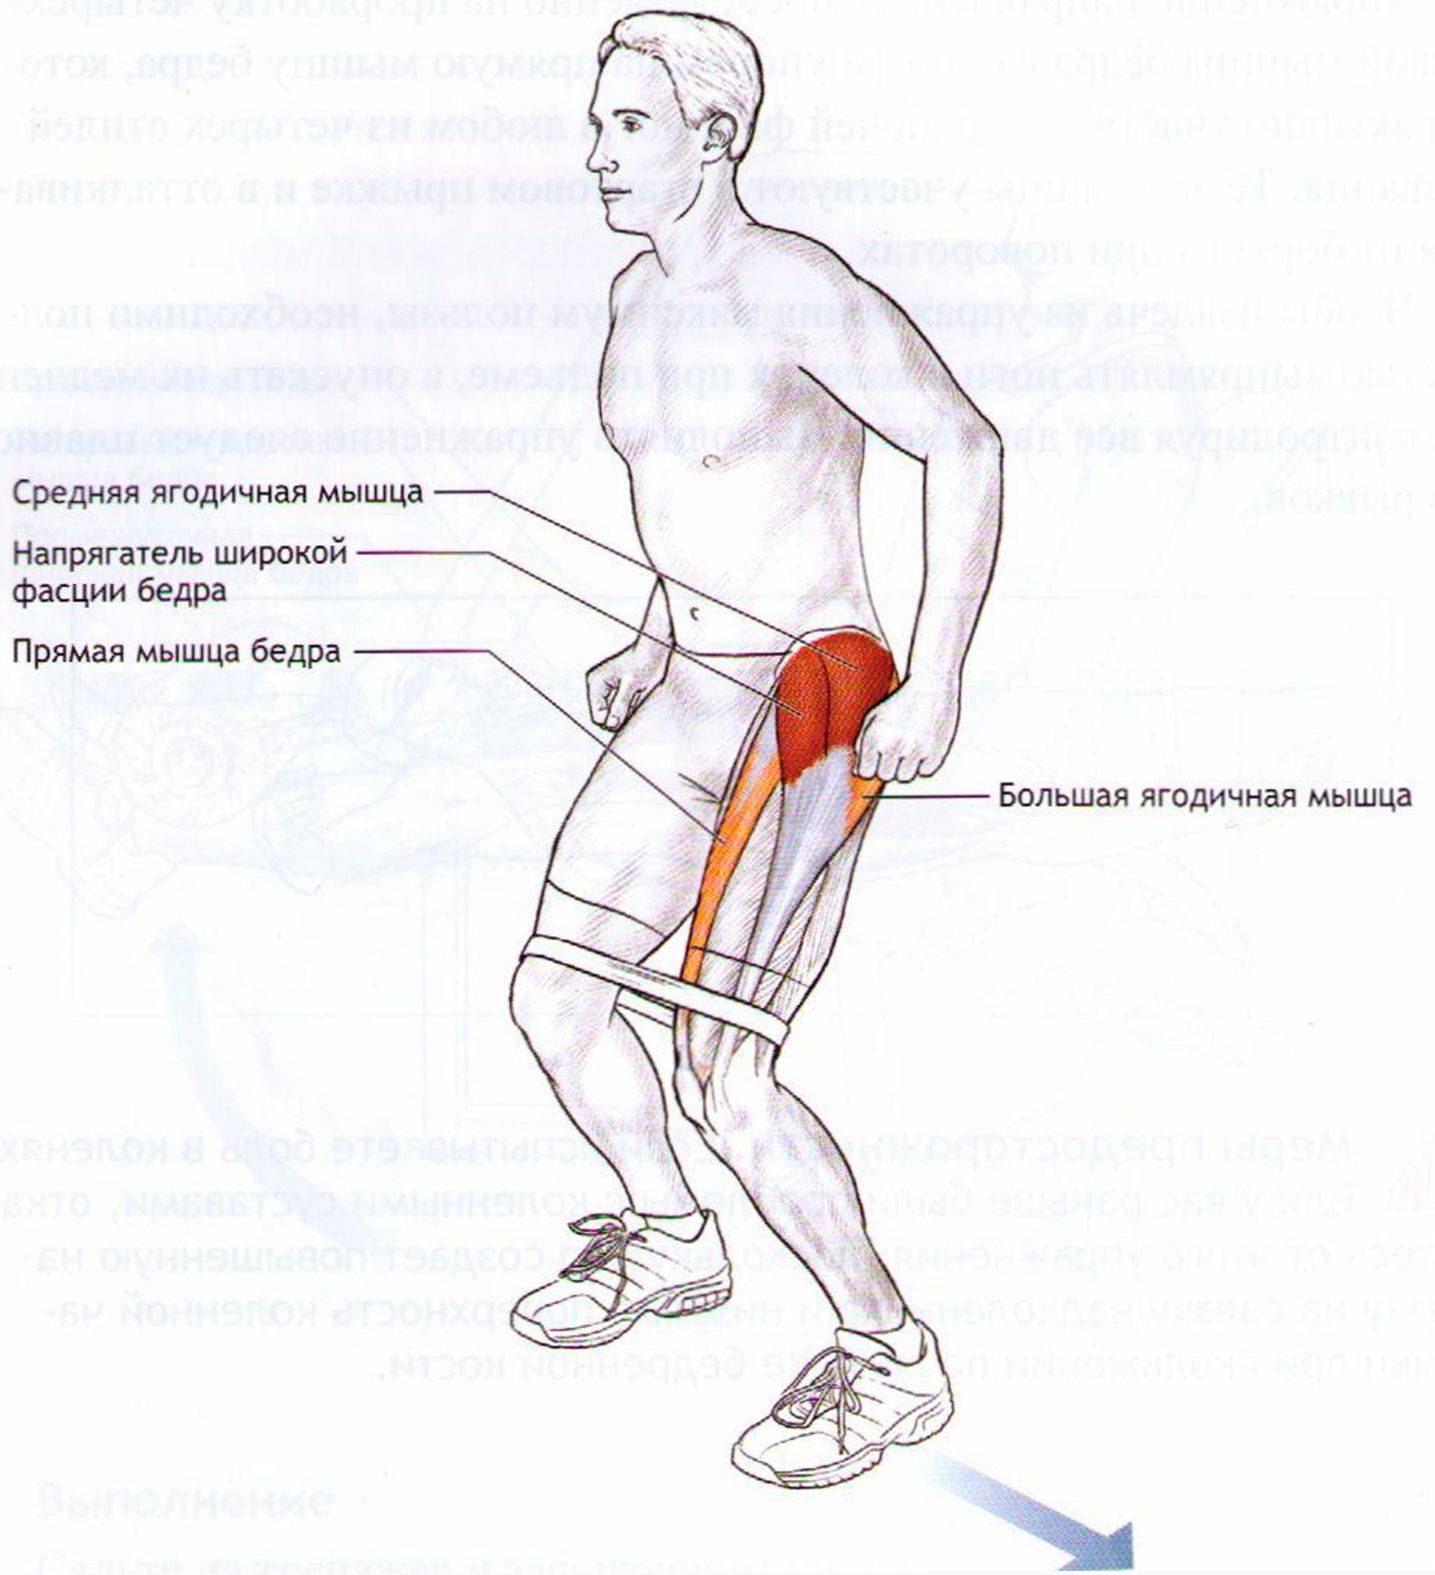 Какие мышцы работают при беге - спорт с точки зрения анатомии